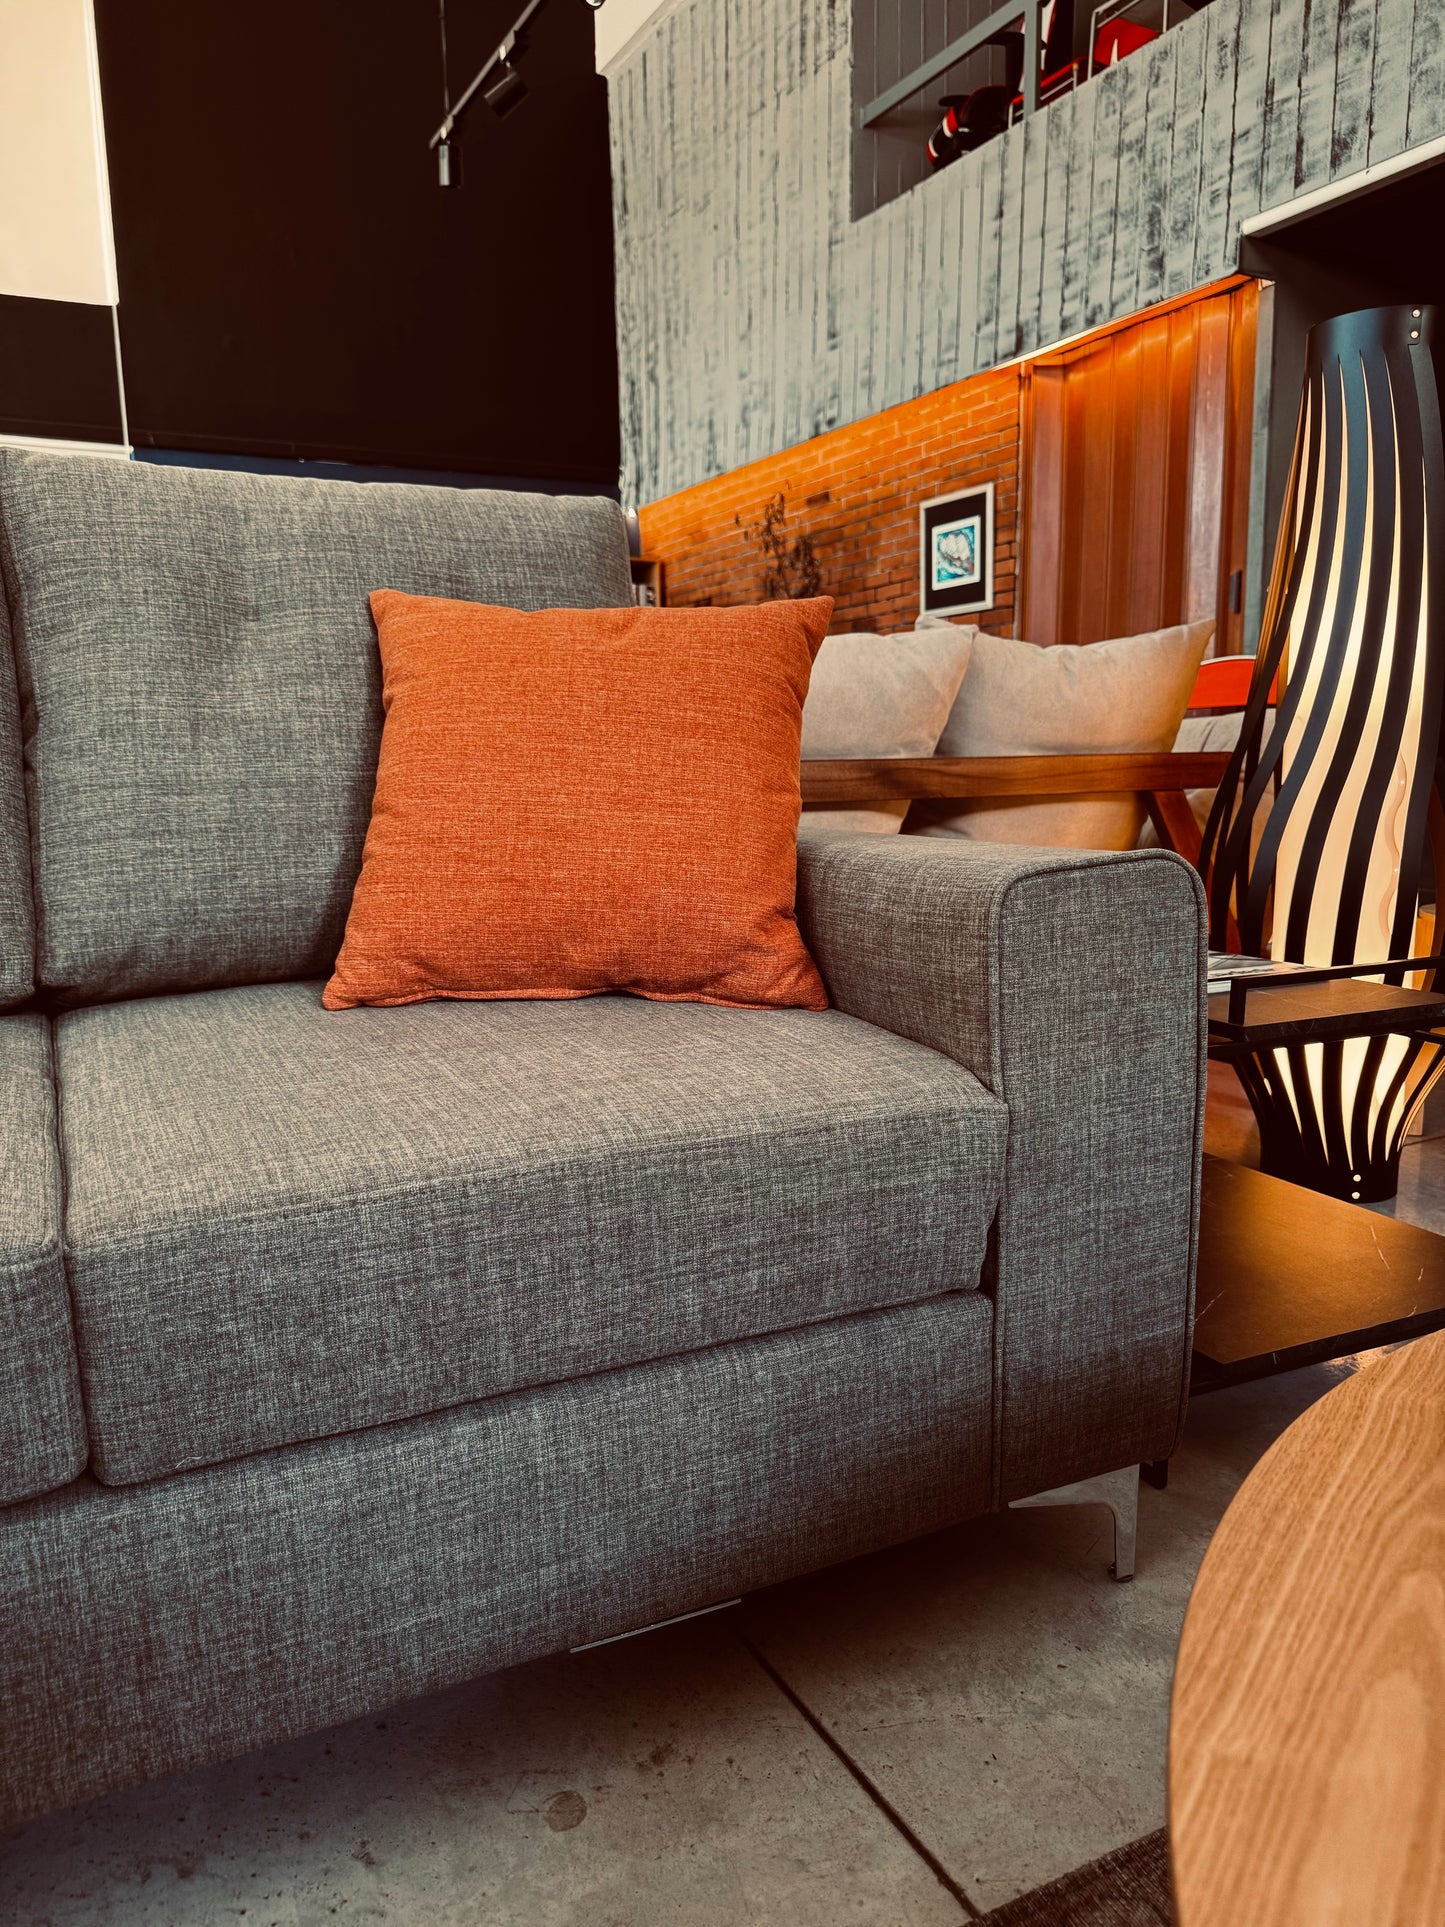 Dante Sofa / καναπές - sofa-bed-futon 